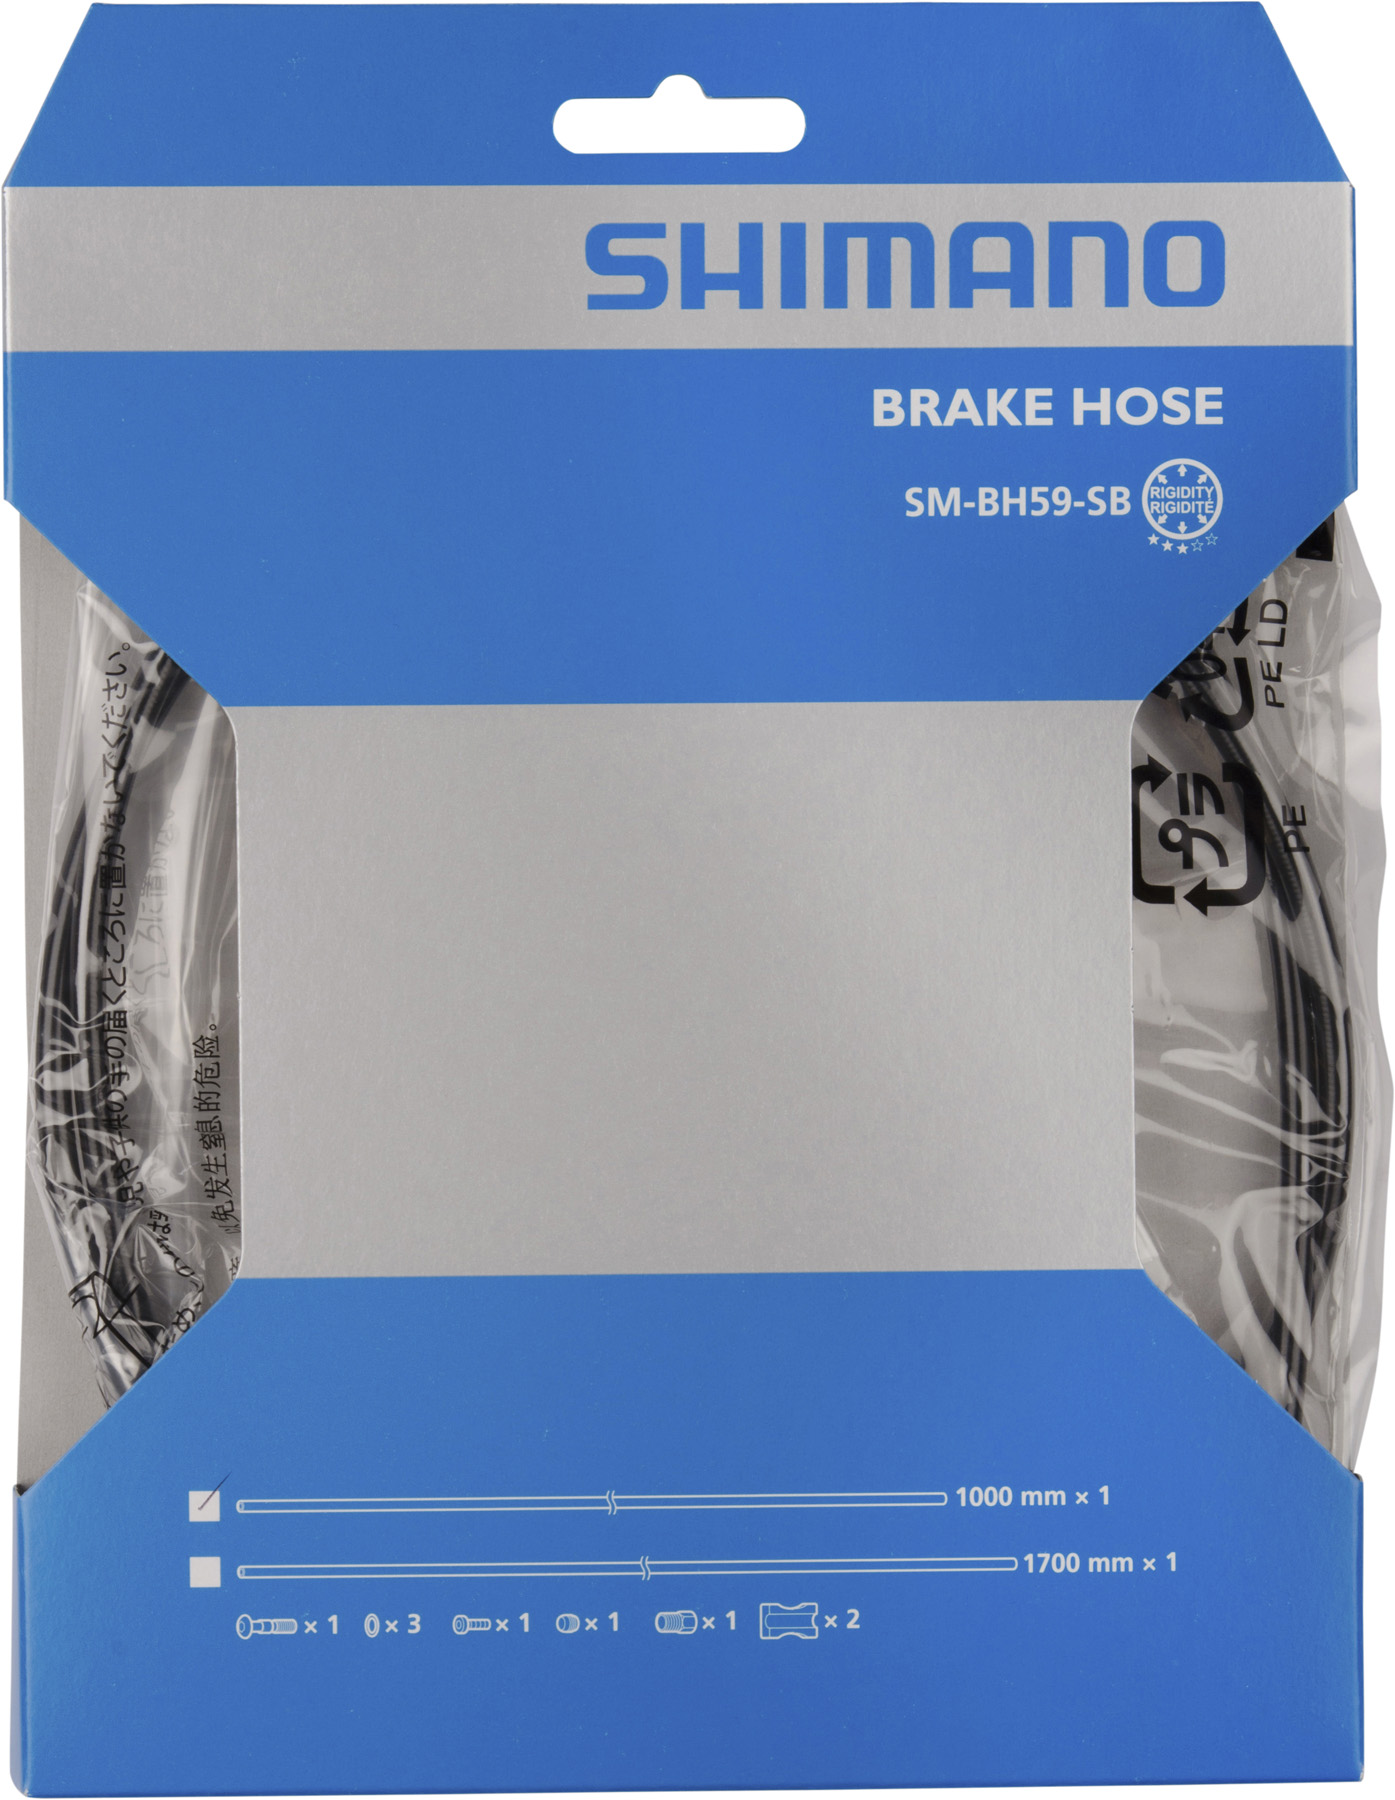 Shimano - Bremsleitung SM-BH59-JK 1700mm schwarz, Bremsen